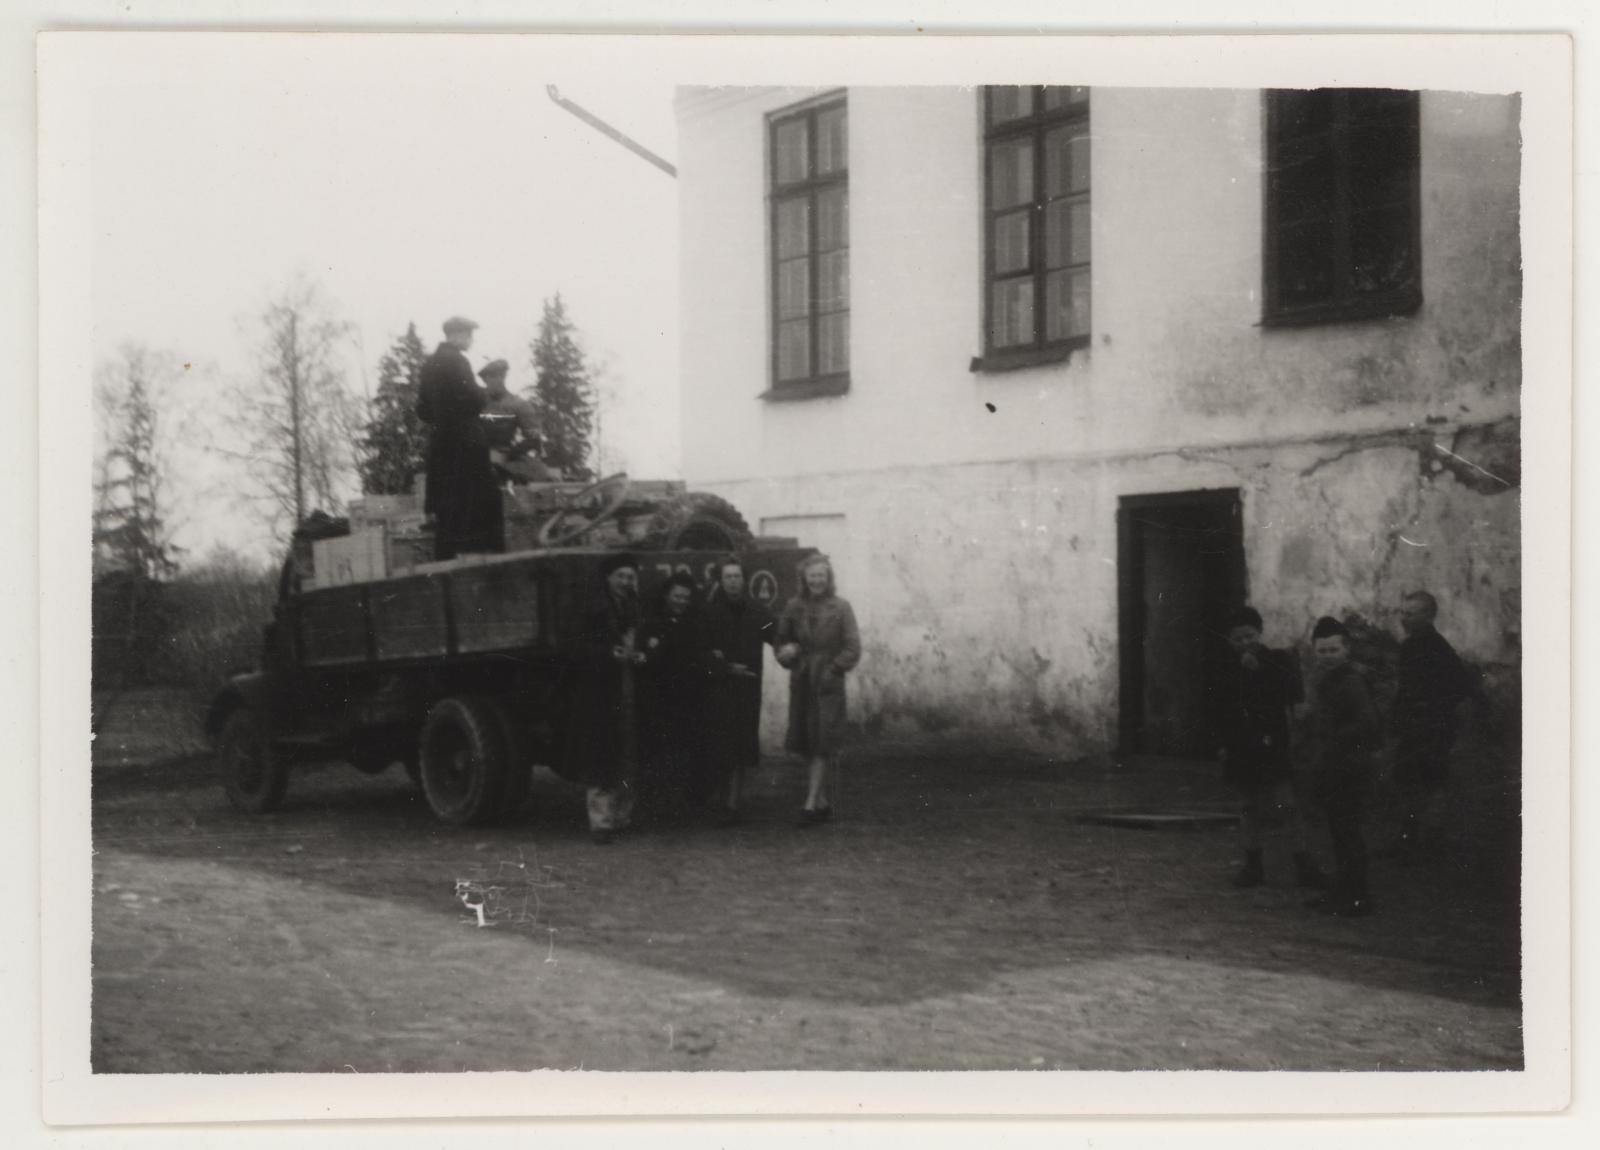 TKM Kunstivarade reevakueerimine Väätsa algkoolist 1946. a. kevadel